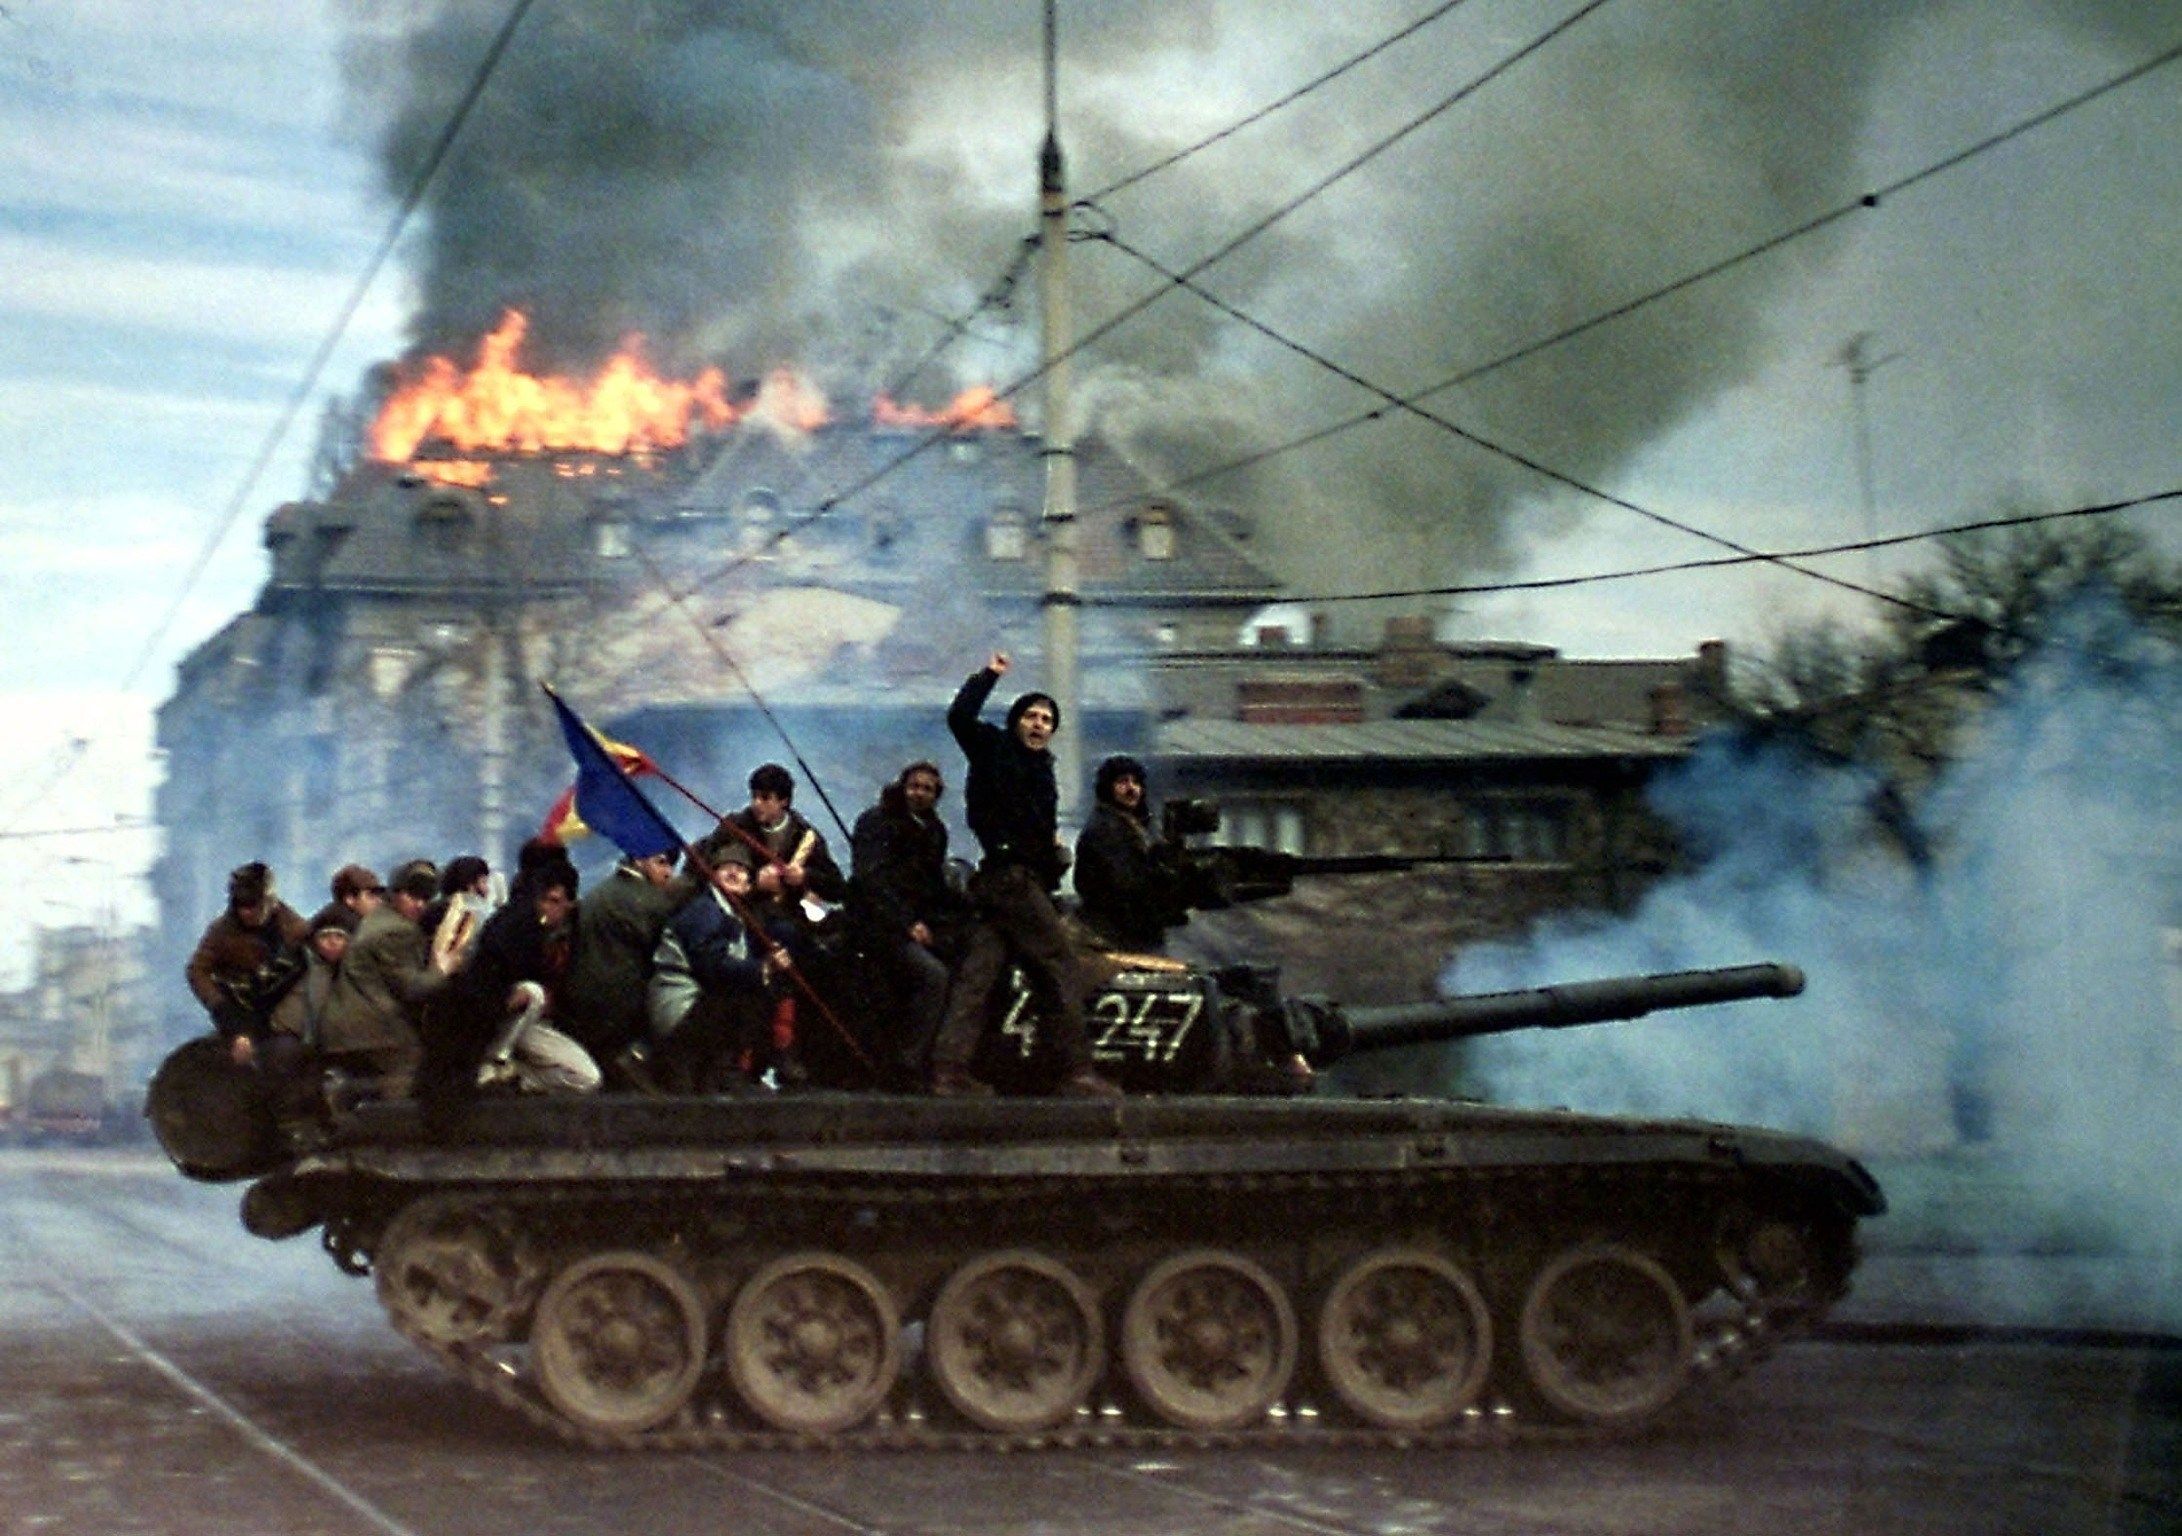 Демонстранты на танке Т-72 во время Румынской революции, Бухарест, декабрь 1989 г.